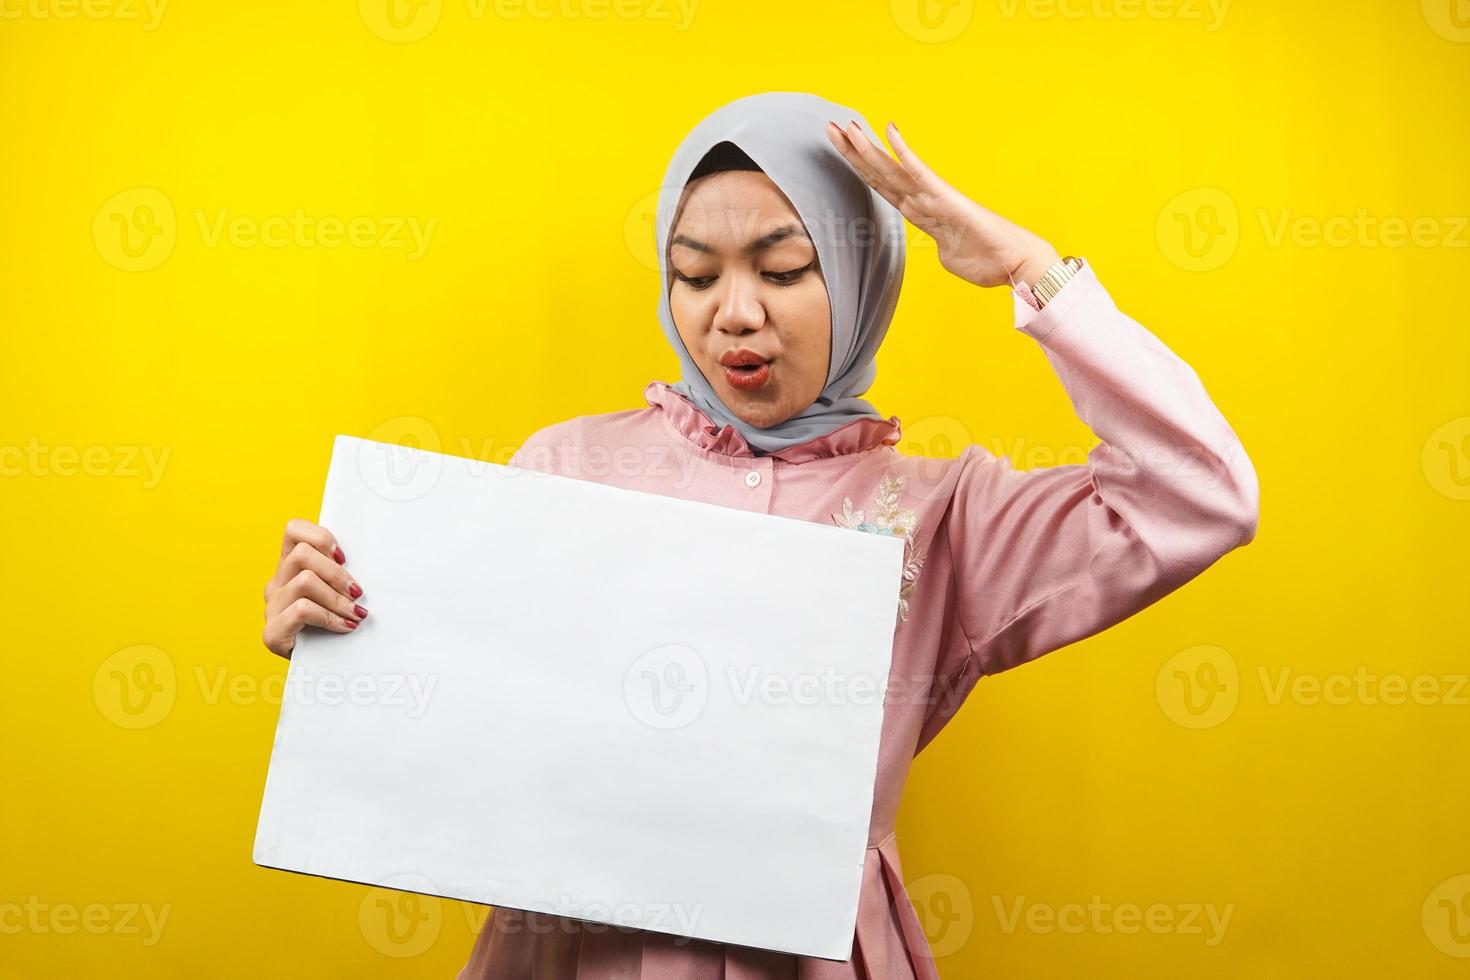 ganska ung muslimsk kvinna chockad, wow, hand som håller en tom banderoll, plakat, vit tavla, tom skylttavla, vit reklamtavla, presenterar något i kopieringsutrymmet, marknadsföring foto